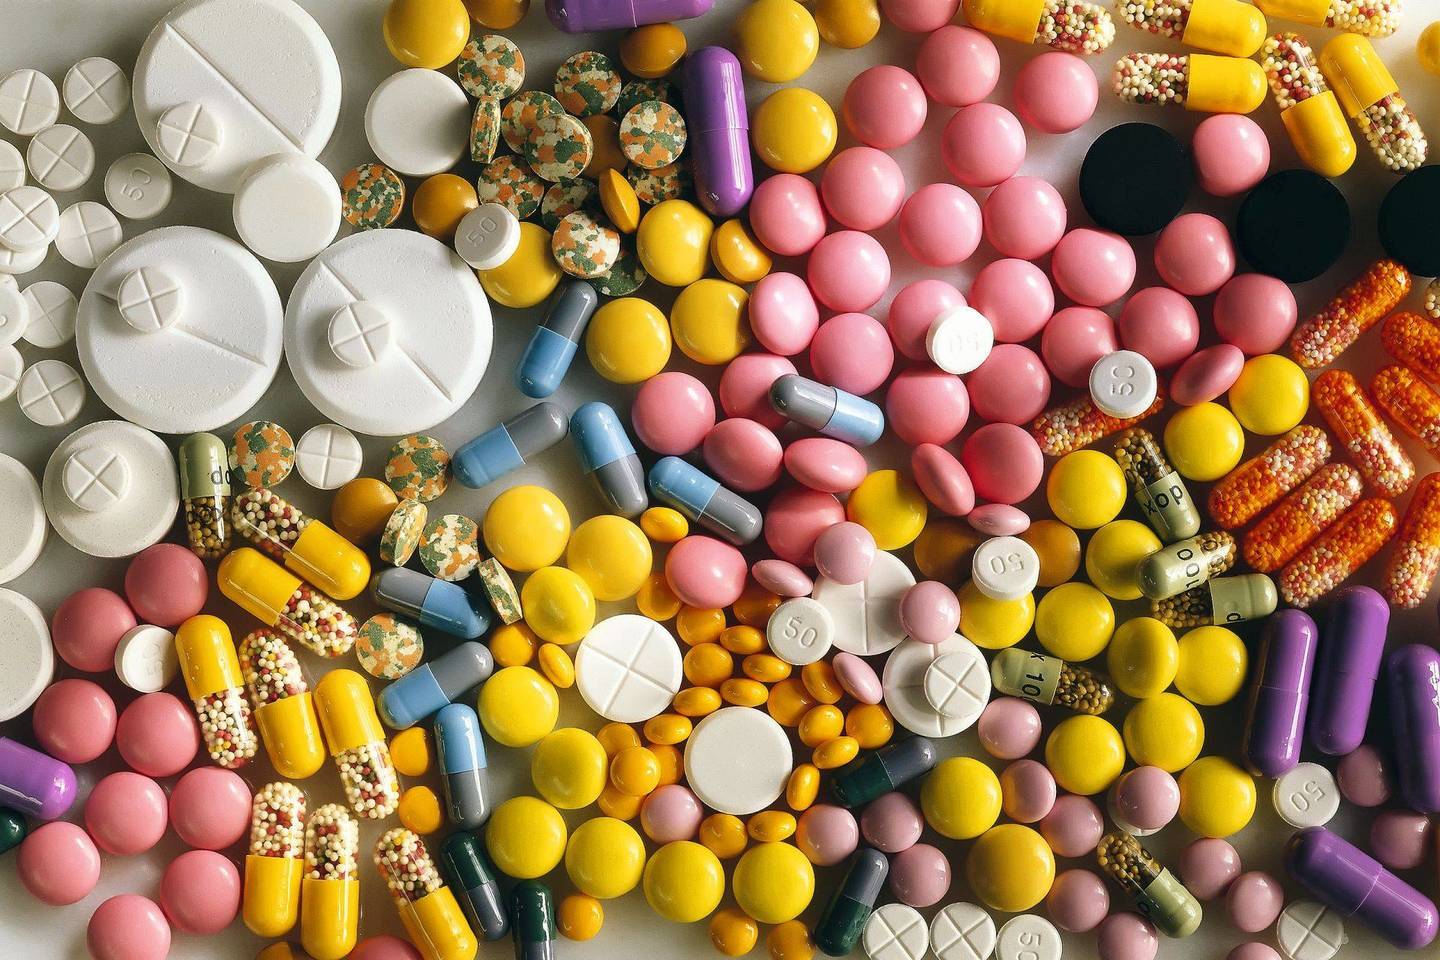 Tabletes ir piliules patogu vartoti, nes jos garantuoja tikslią veikliosios medžiagos dozę.<br>Archyvo nuotr.